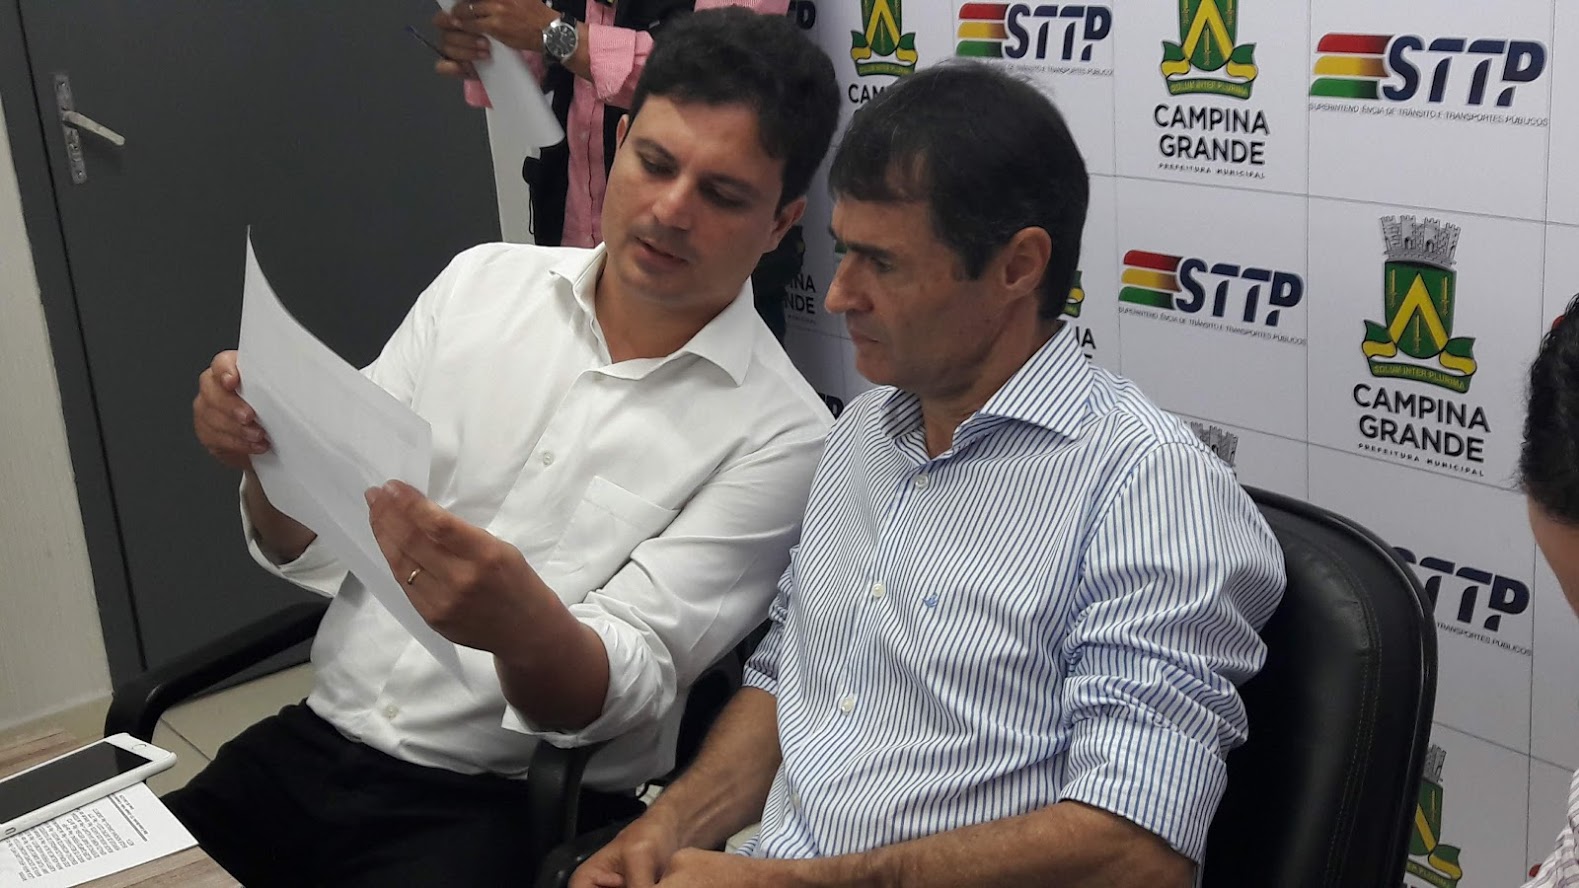 Superintendente Félix Neto acompanha o Prefeito Romero Rodrigues no congresso sobre gestões inovadoras, em SP